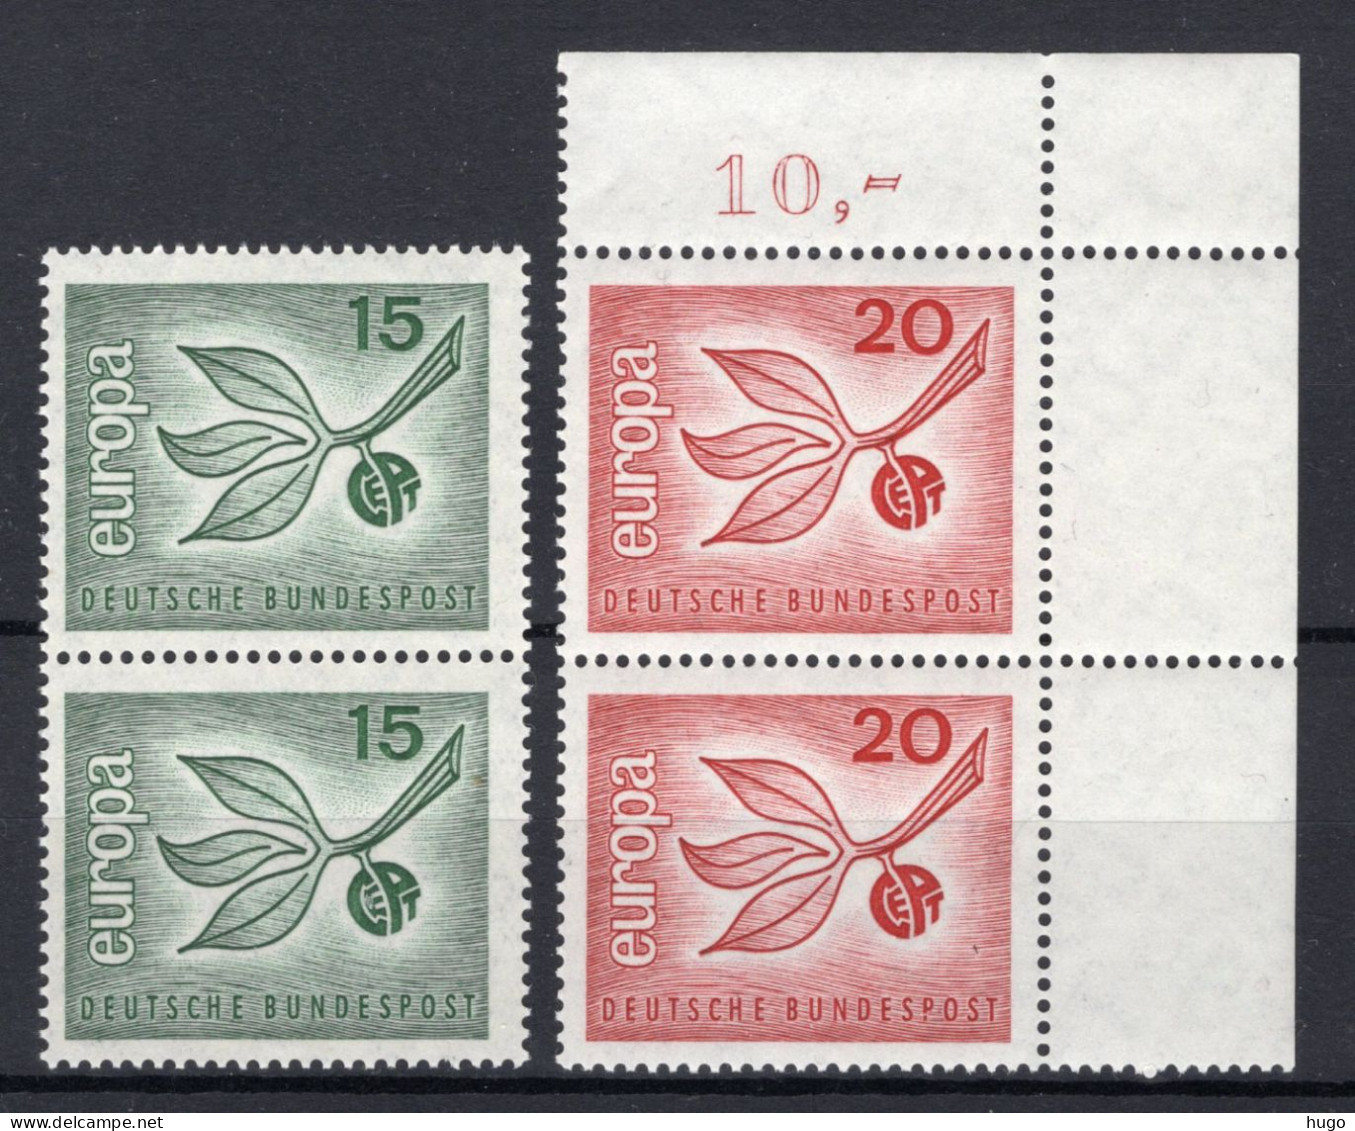 (B) Duitsland CEPT 483/484 (2 St) MNH - 1965 - 1965